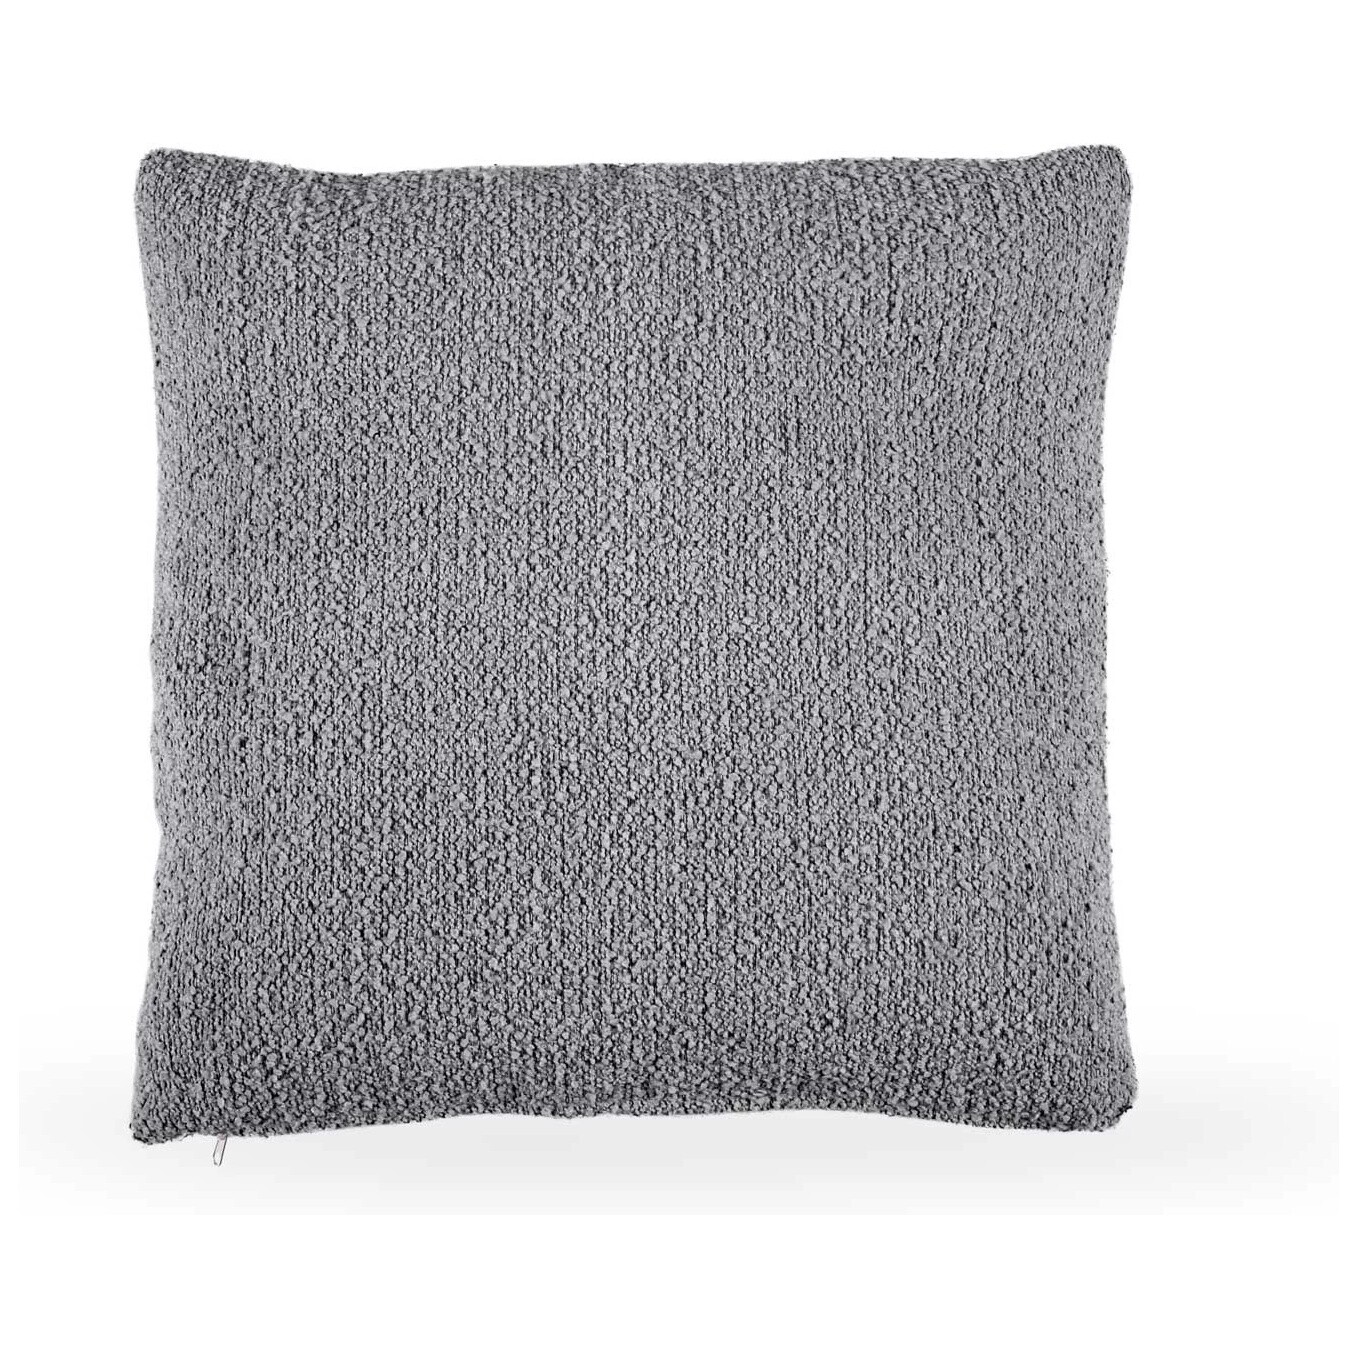 Подушка квадратная 60 см ткань Buckle darkgray серая Fabro